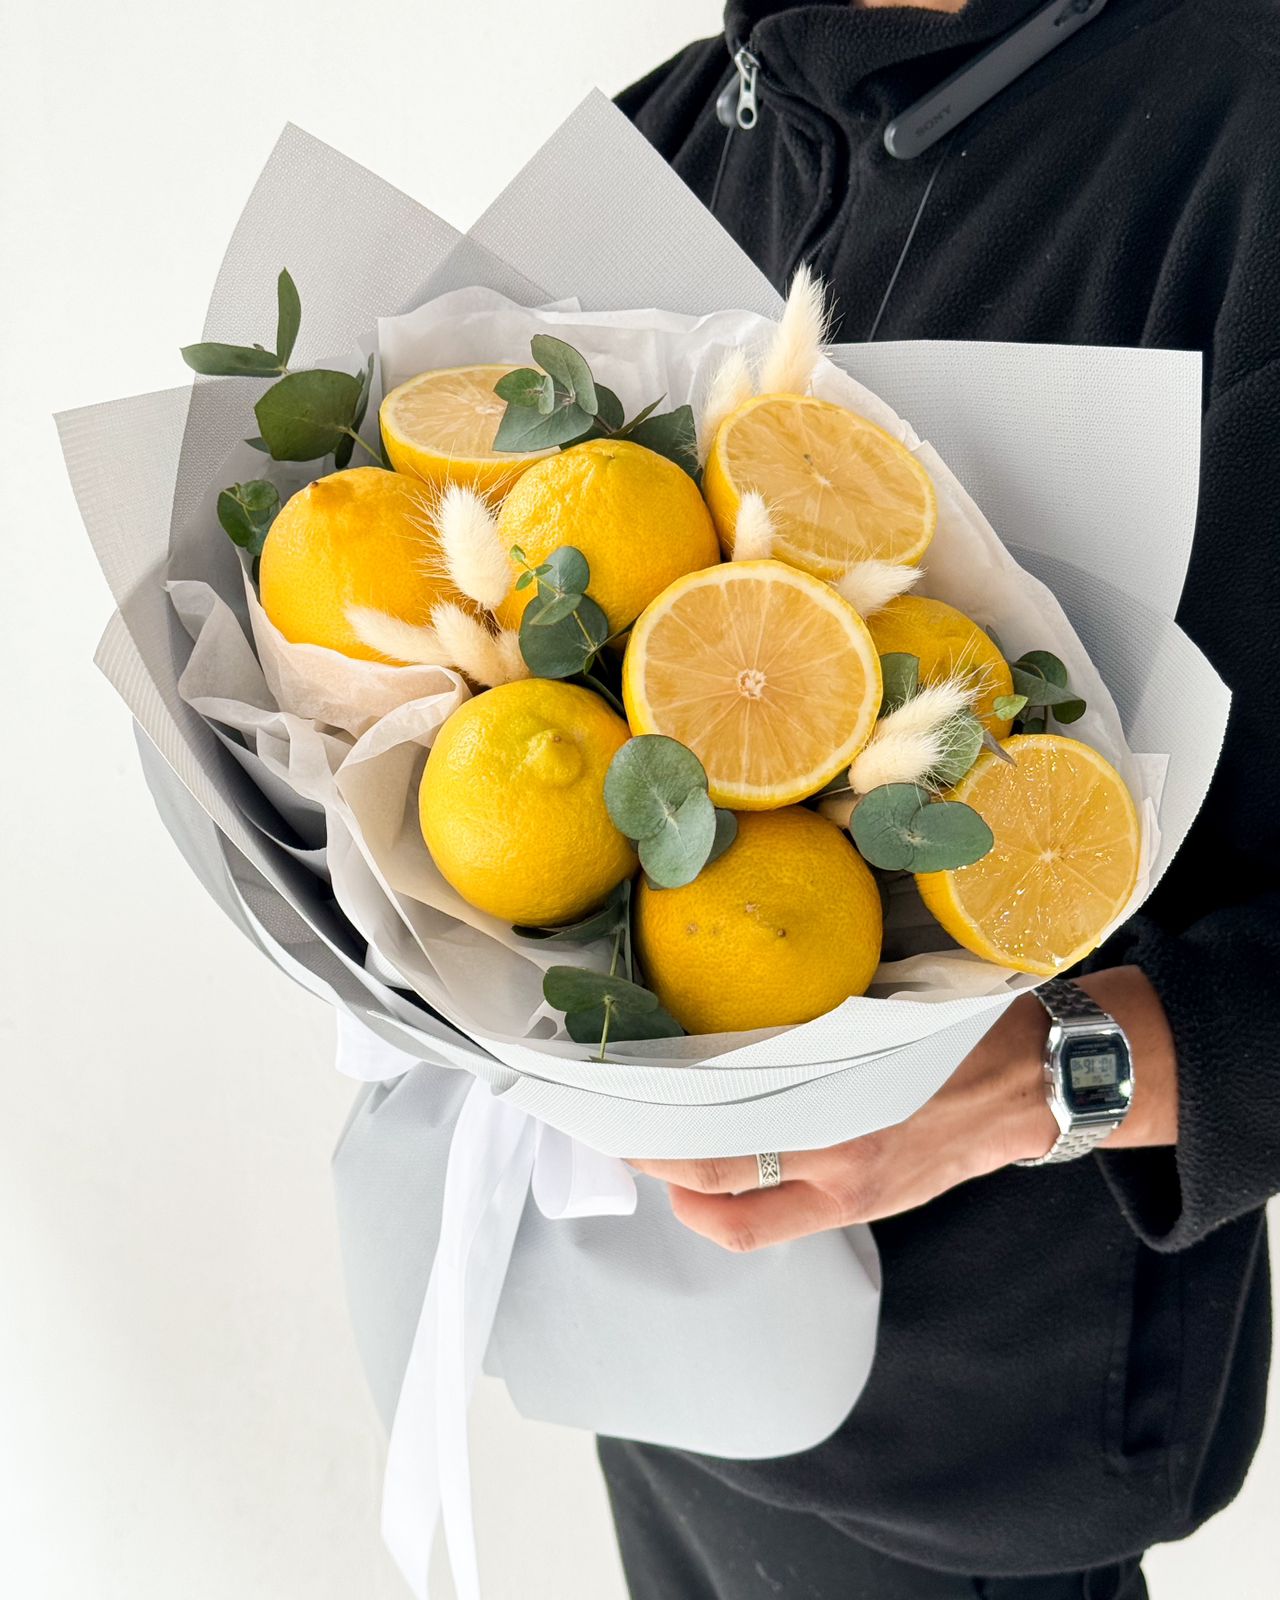 Фруктовый букет "Lemon" из лимонов и эвкалипта